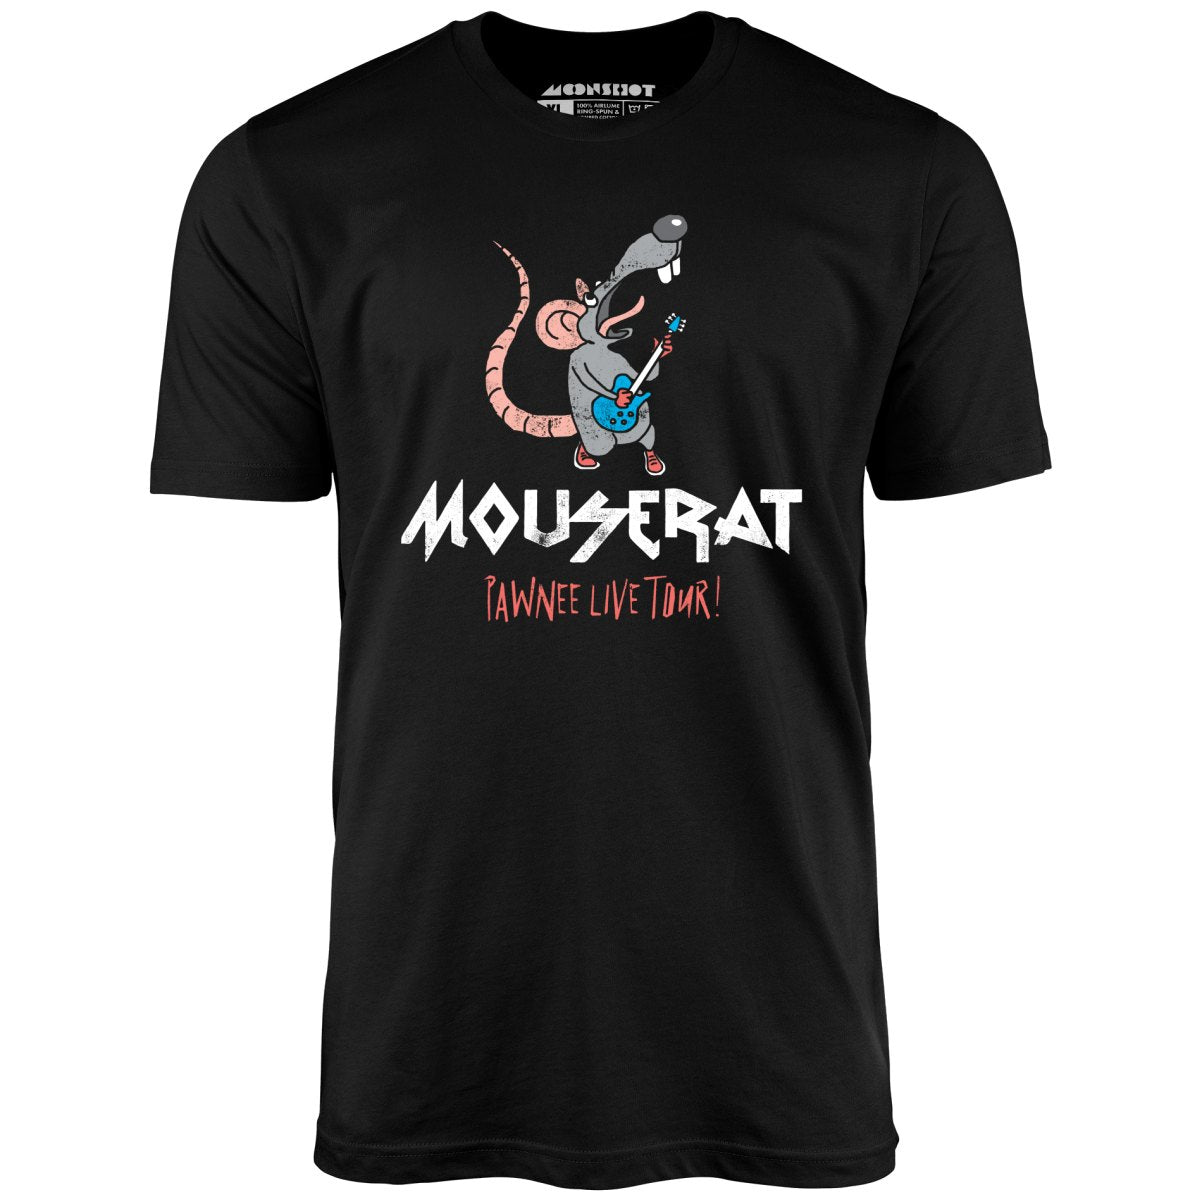 Mouse Rat - Pawnee Live Tour - Unisex T-Shirt